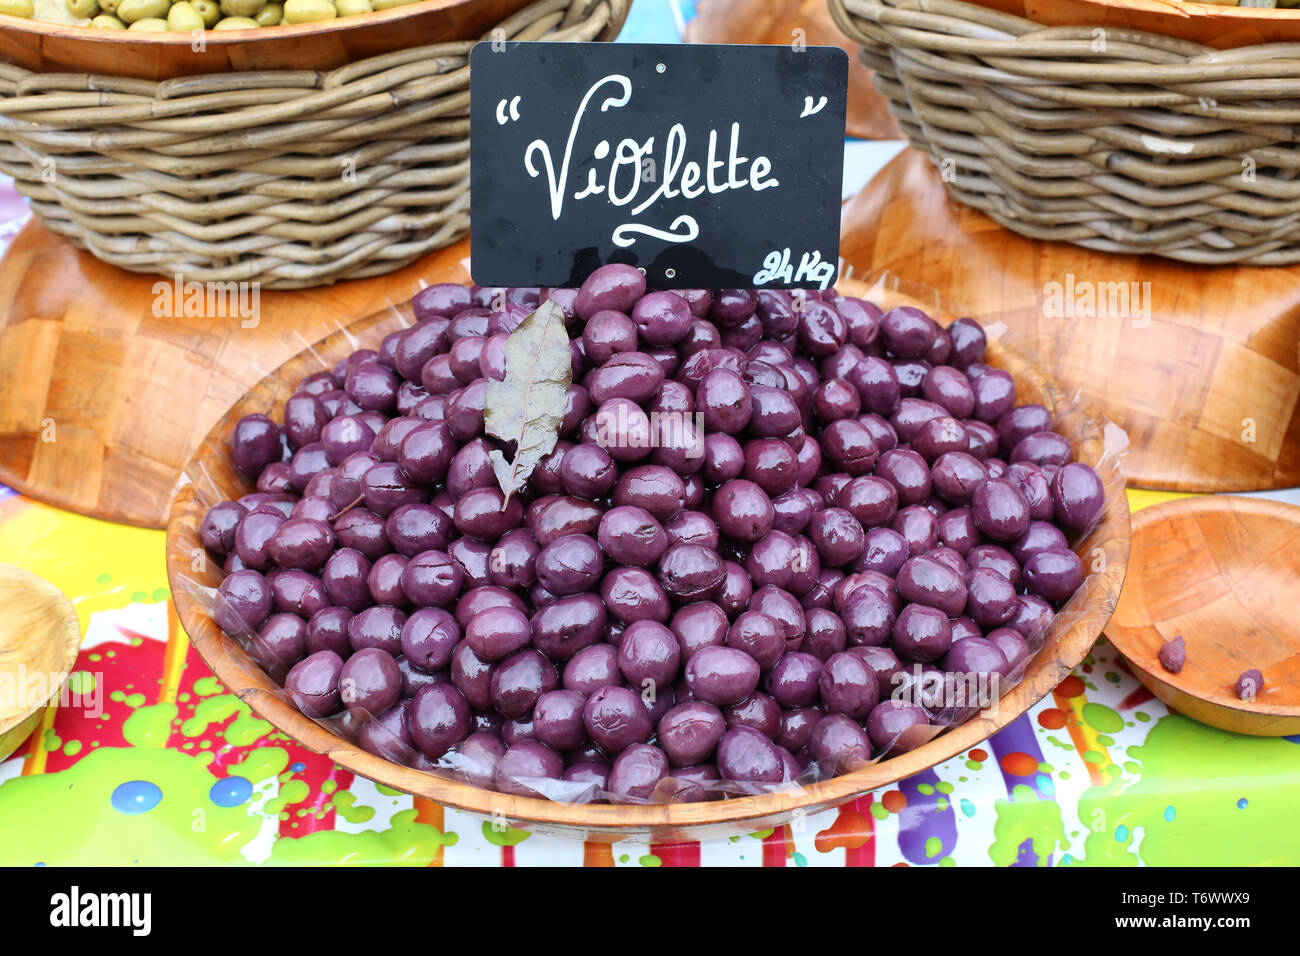 Vente d'olives violettes sur un marché local. Stock Photo